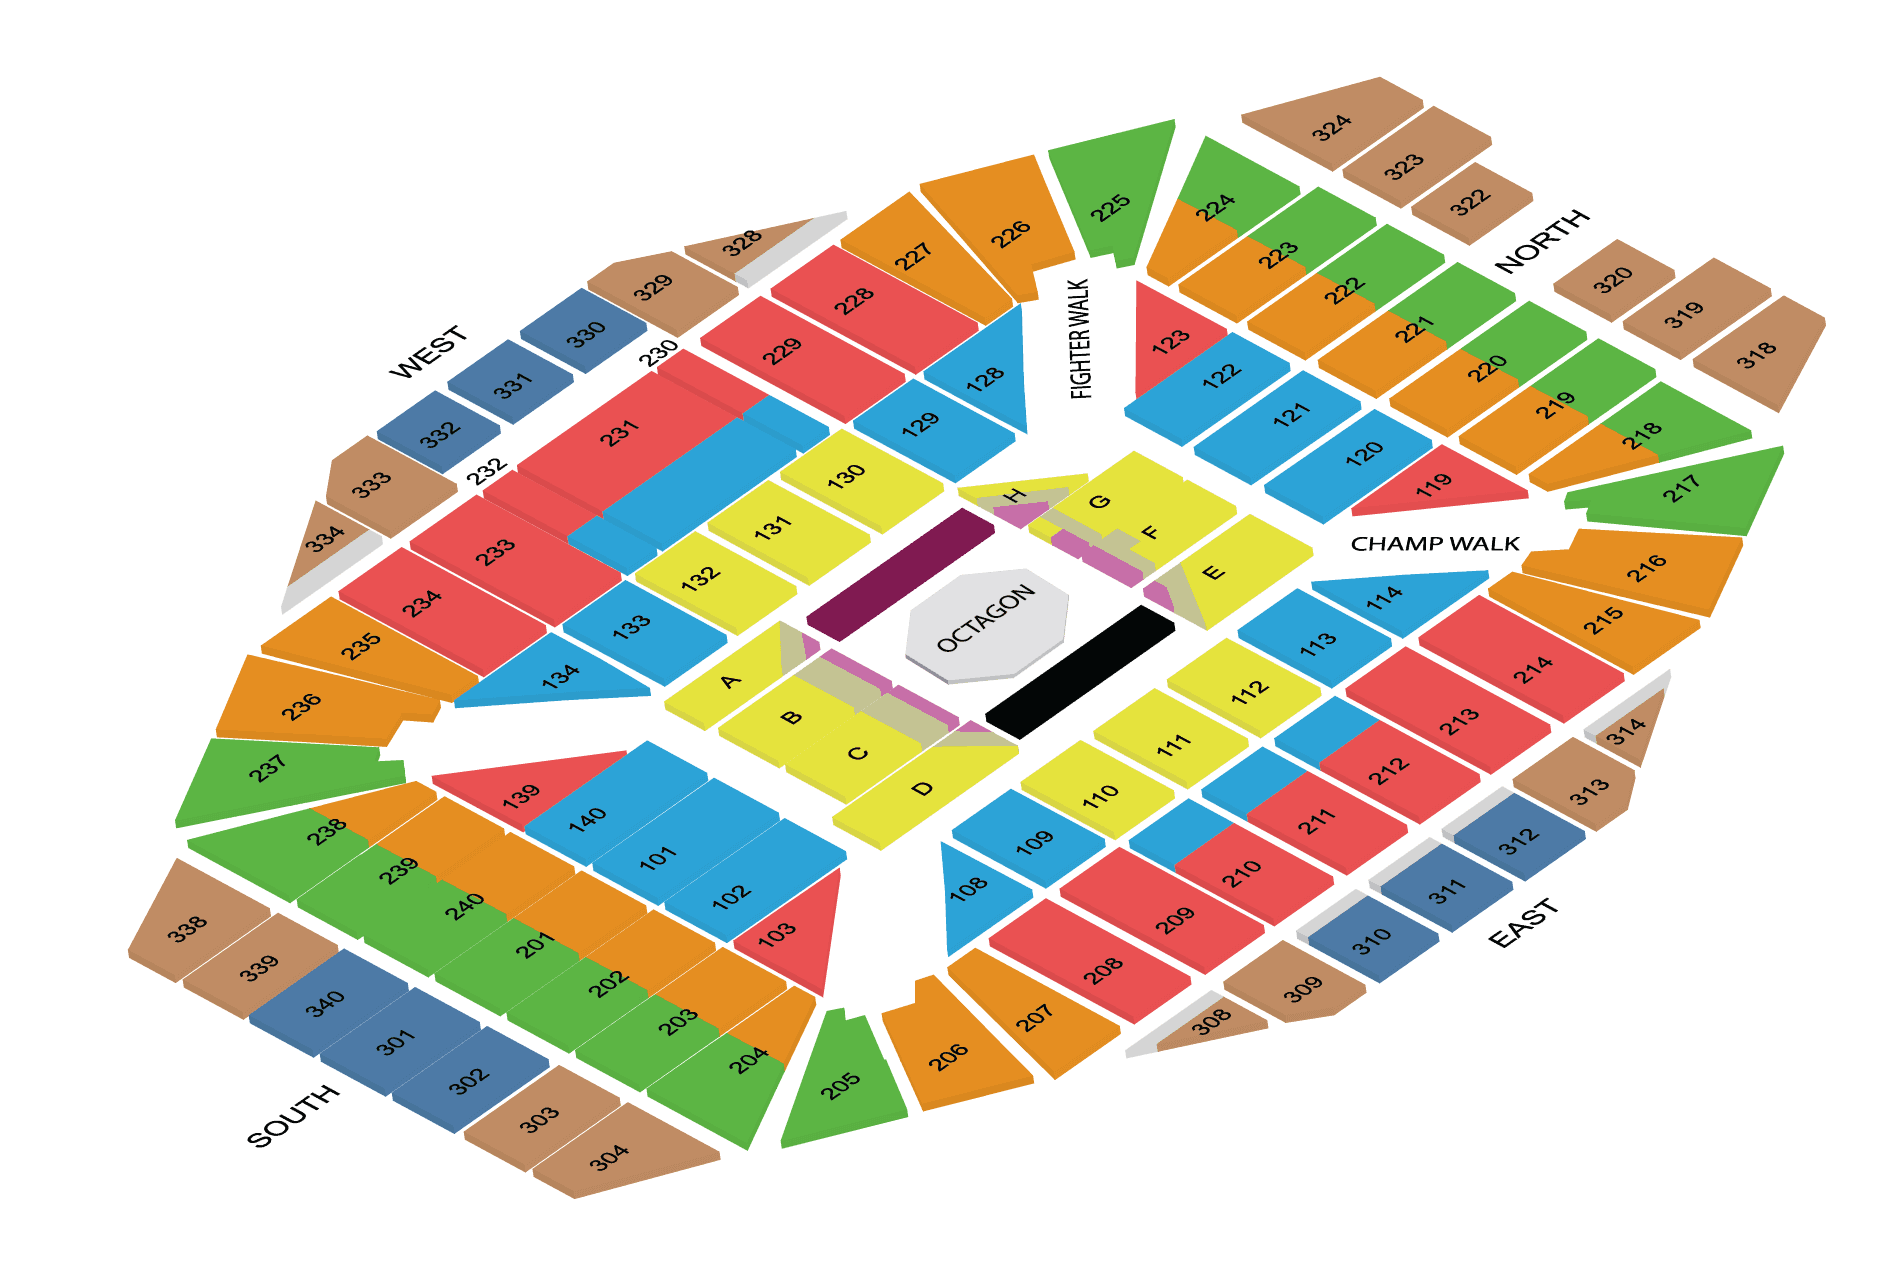 Singapore National Stadium Seating Plan